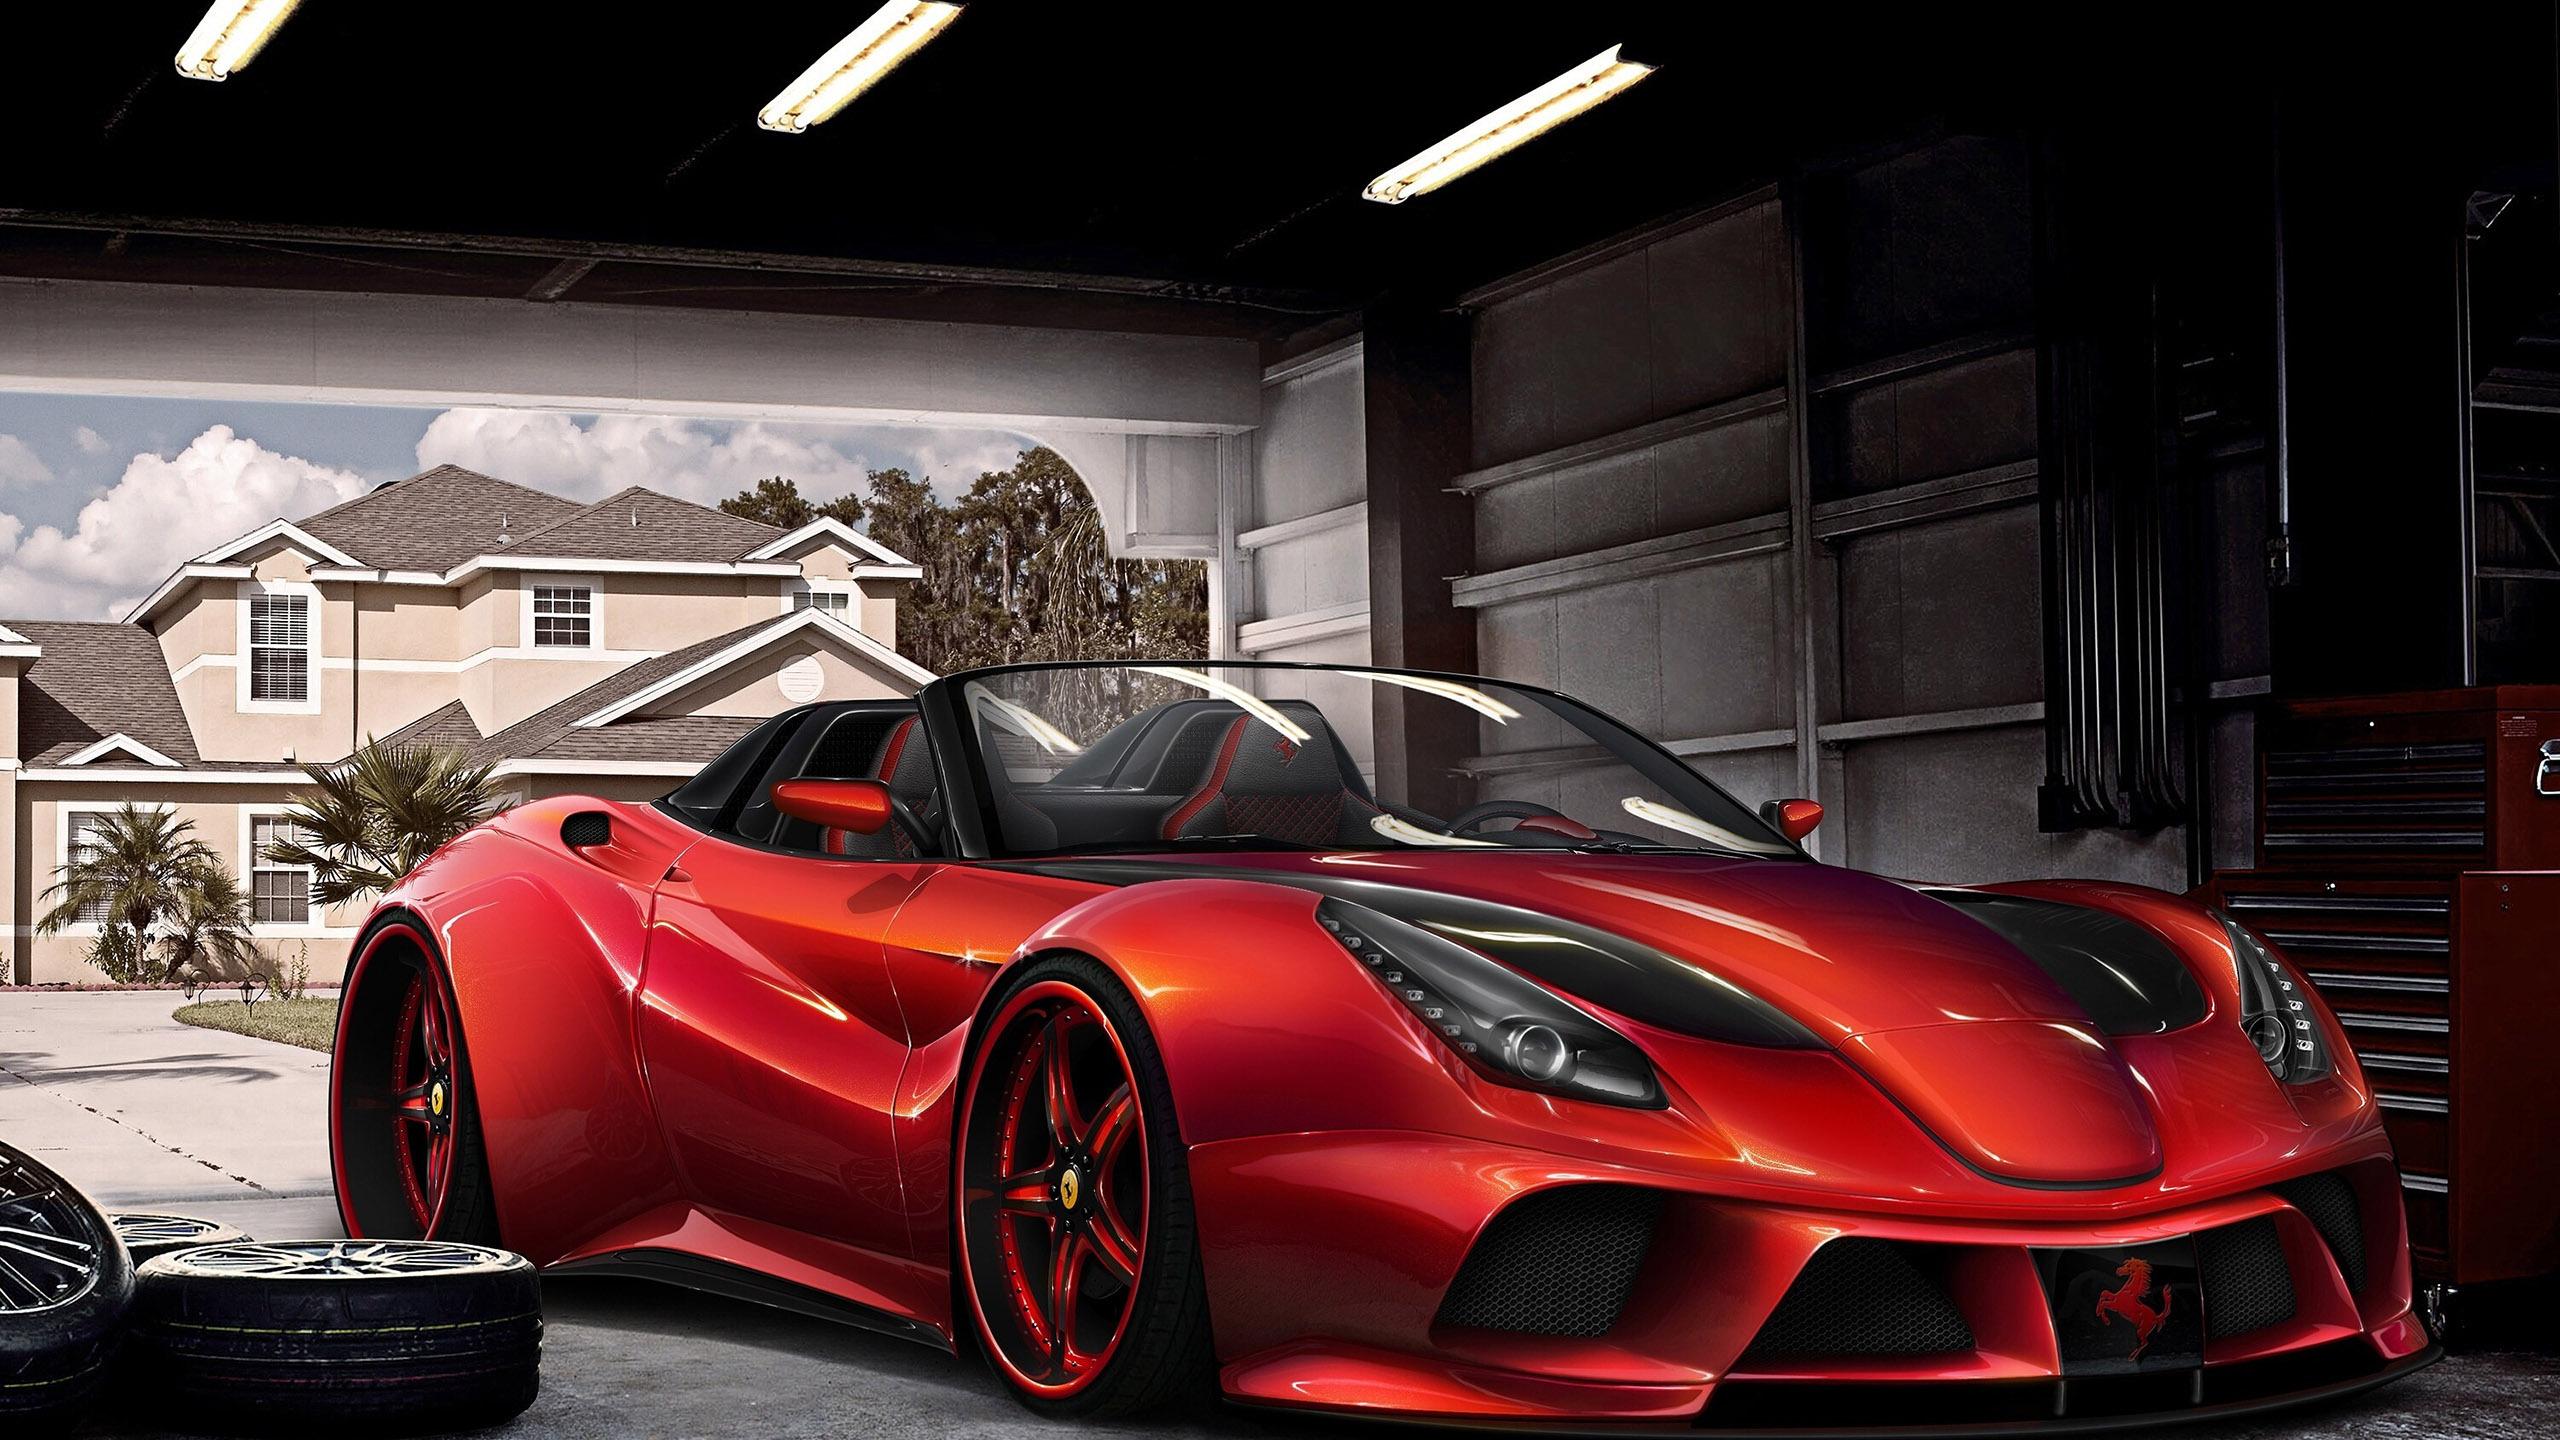 Hd Ferrari F12 Berlinetta In The Garage Wallpaper - House - HD Wallpaper 